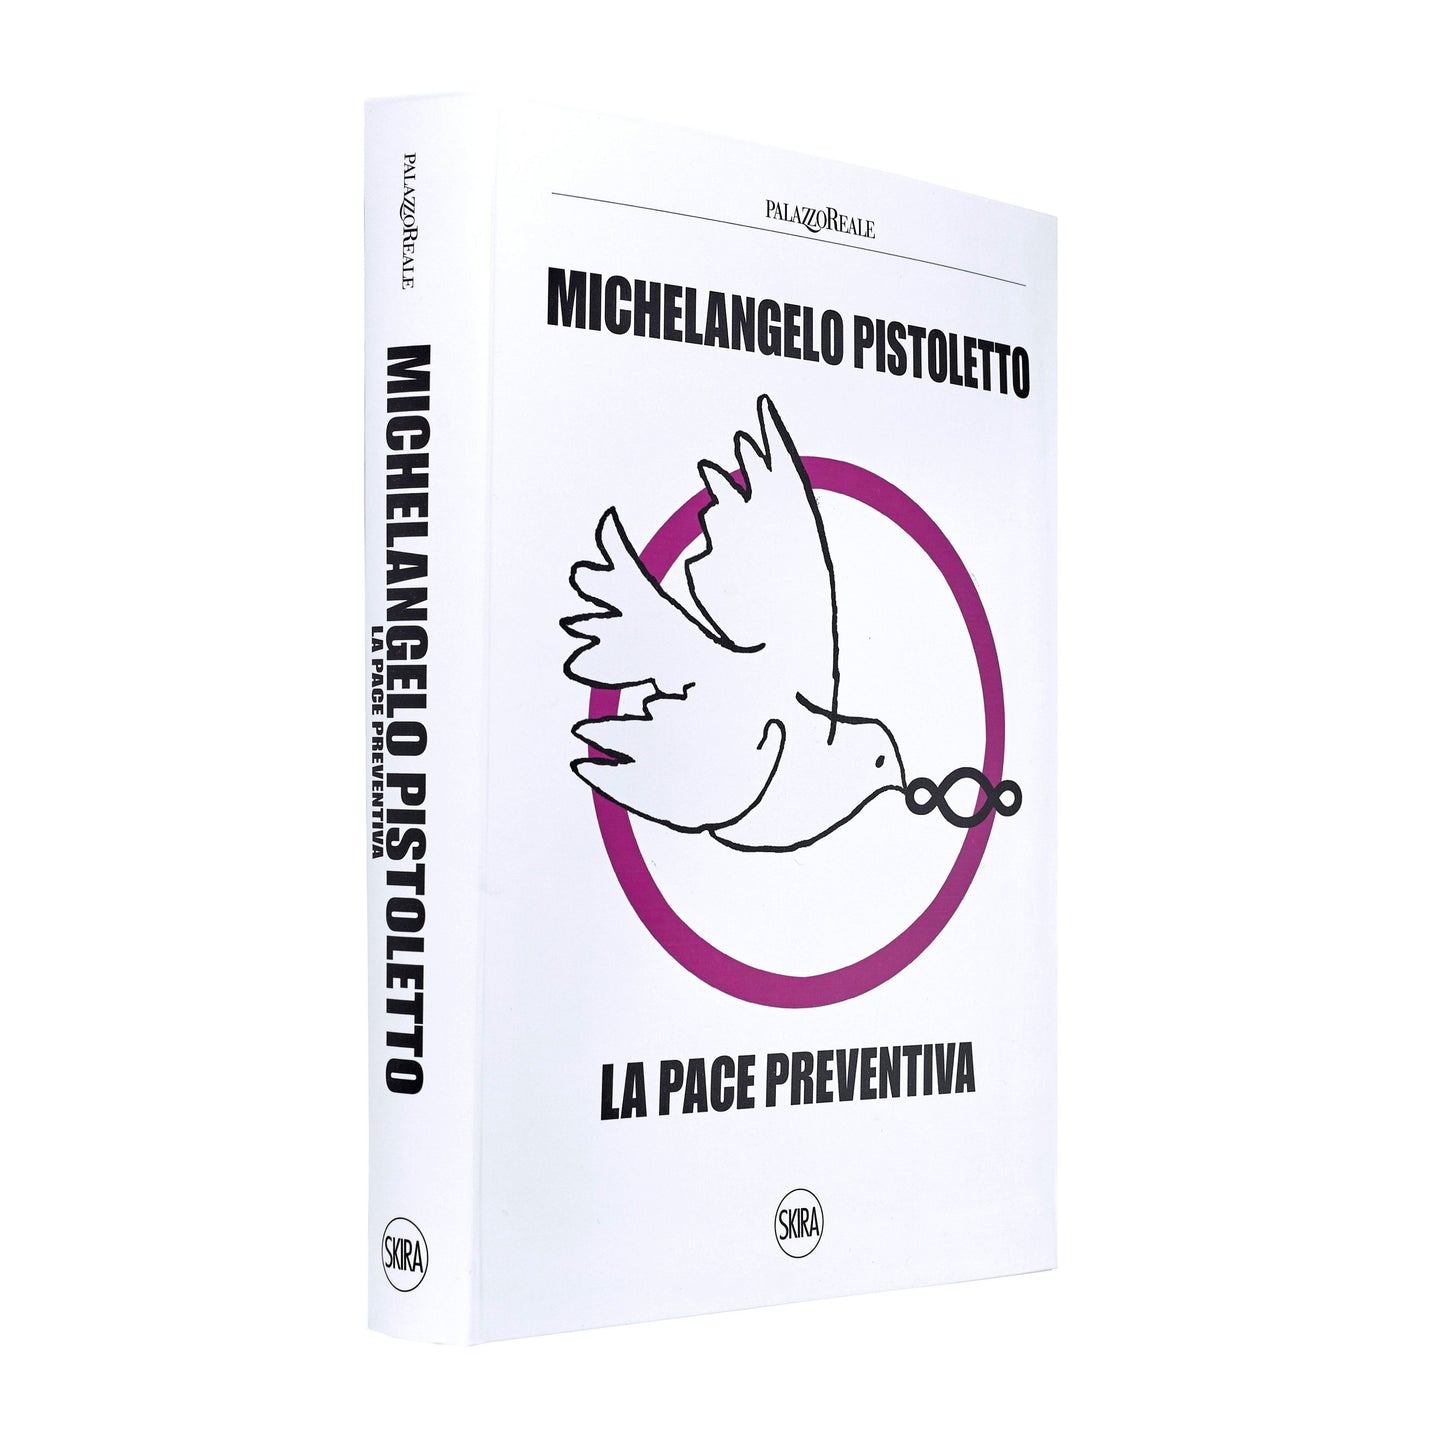 La pace preventiva (catalogo mostra)